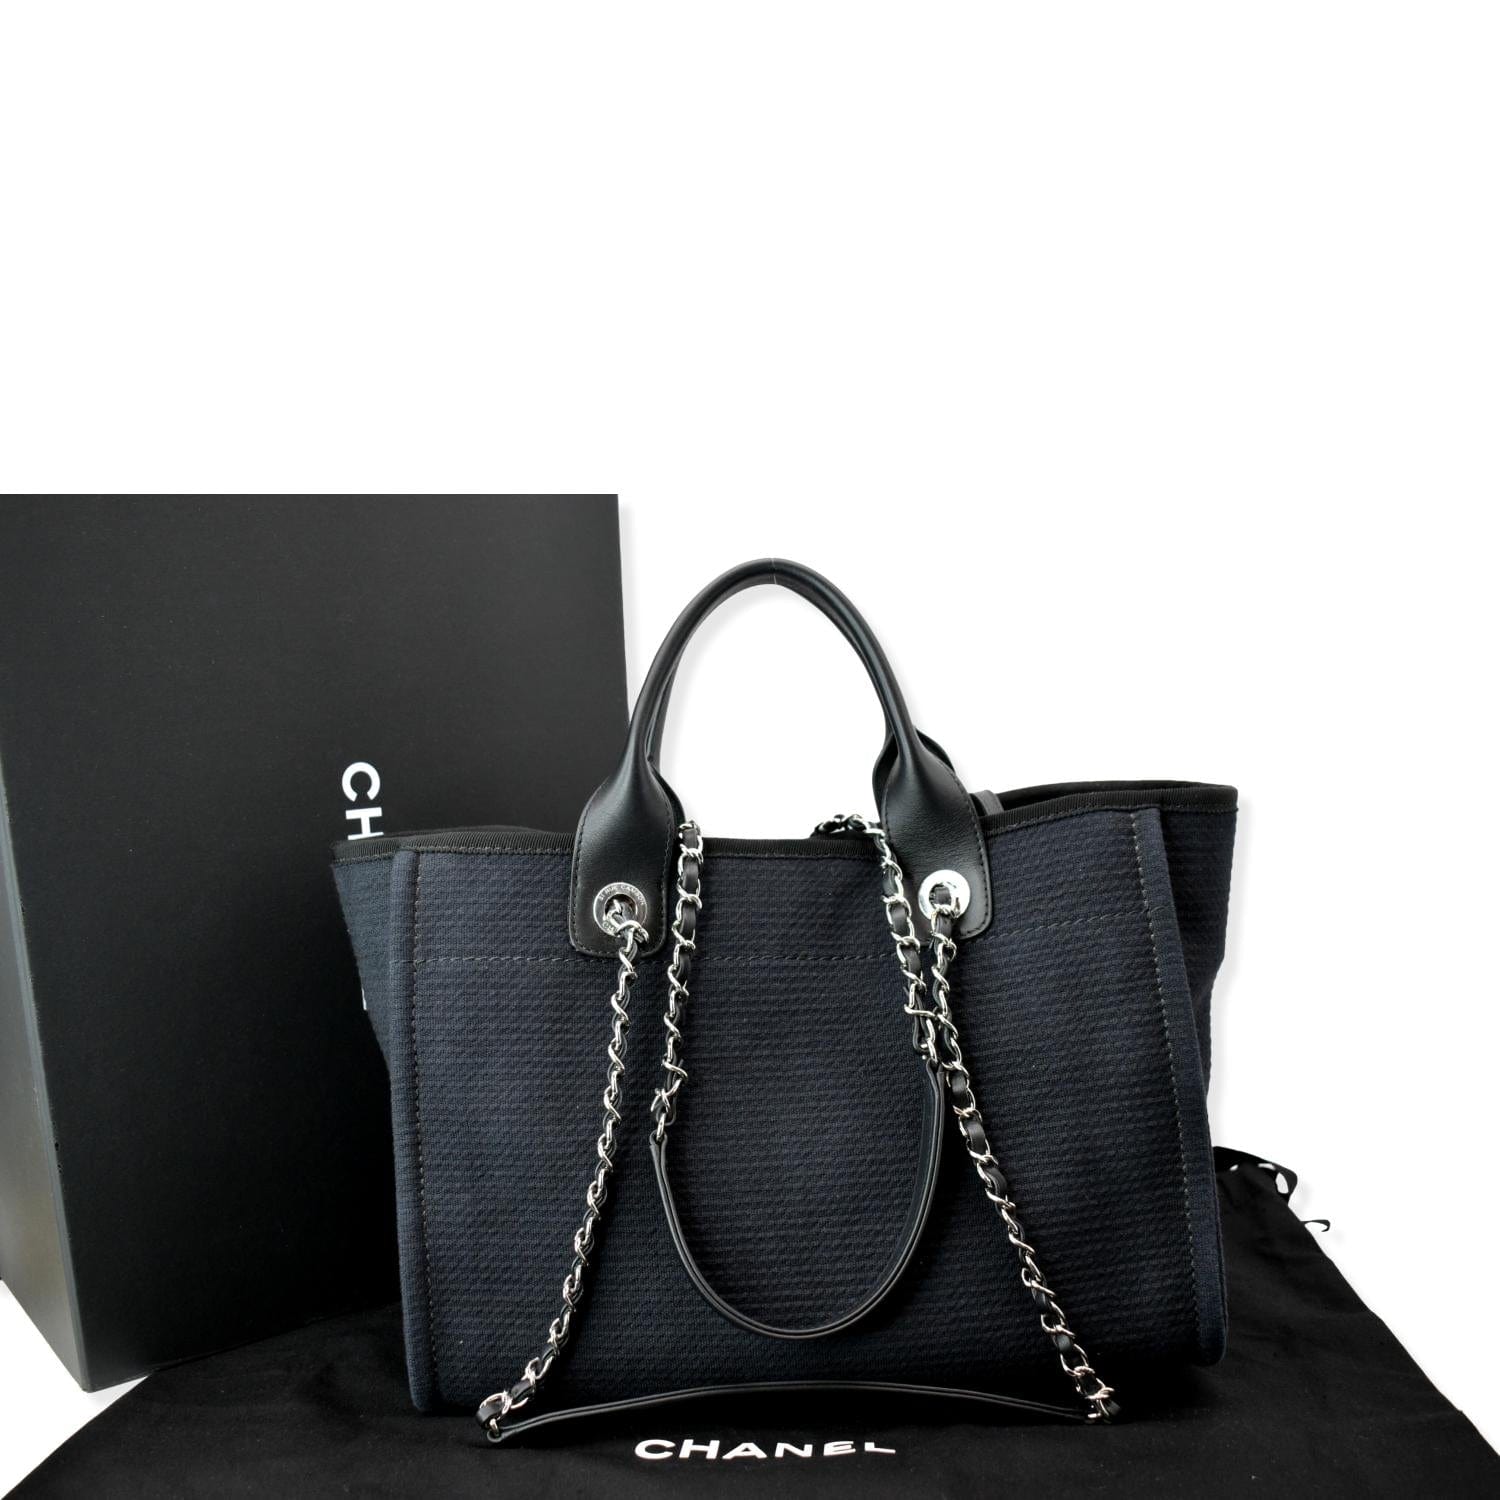 Chanel Boy limited edition bag